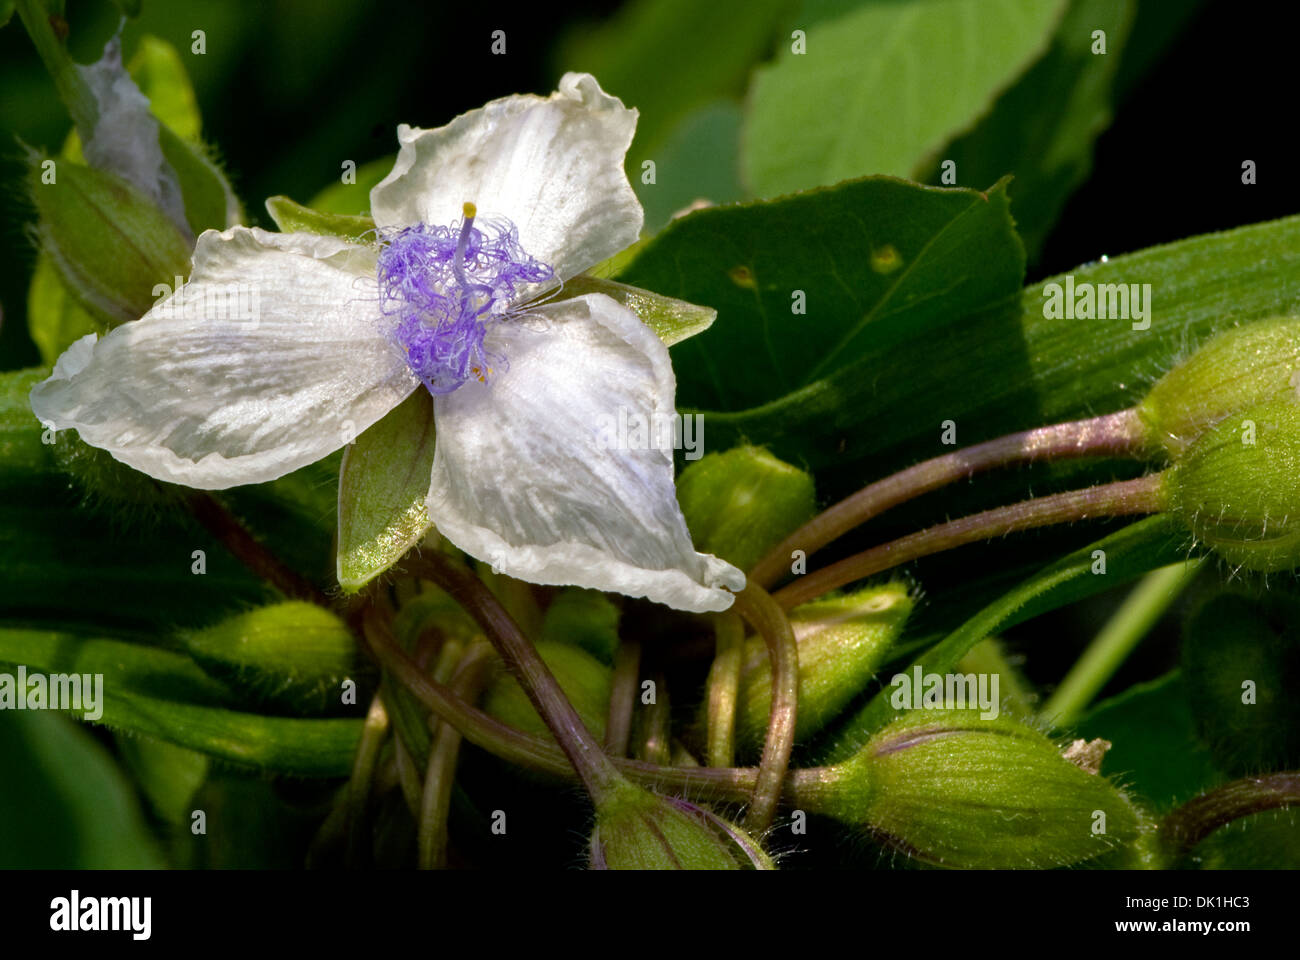 Cerrar la imagen de un blanco y morado Tradescantia virginiana (Virginia) spiderwort flor perenne. Foto de stock